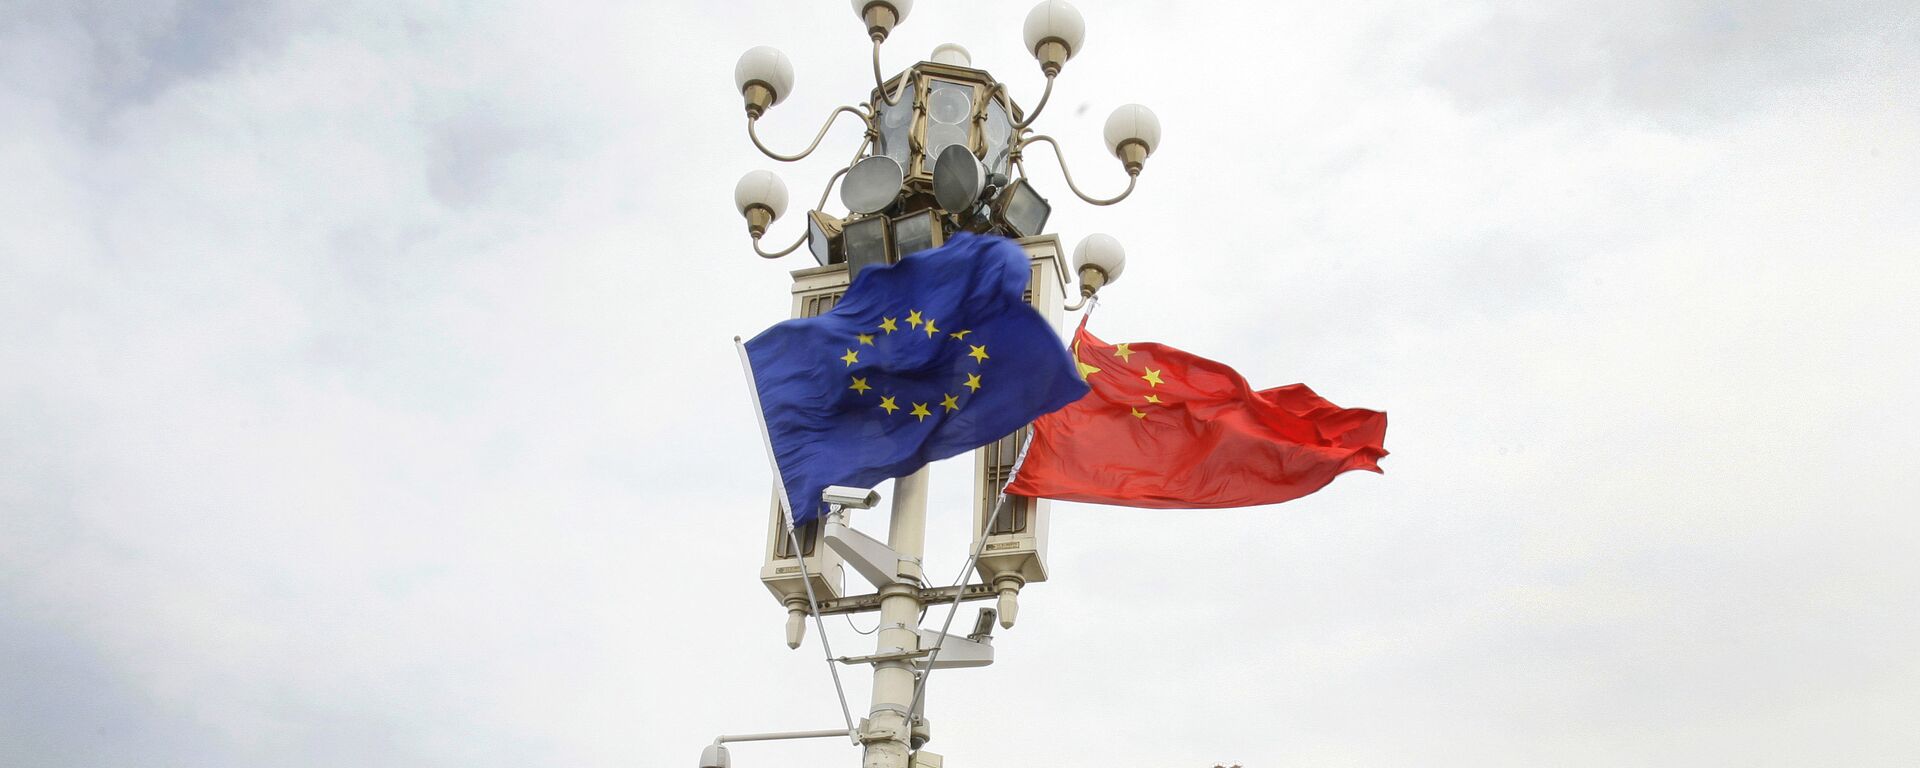 Las banderas de la UE y China - Sputnik Mundo, 1920, 23.03.2021